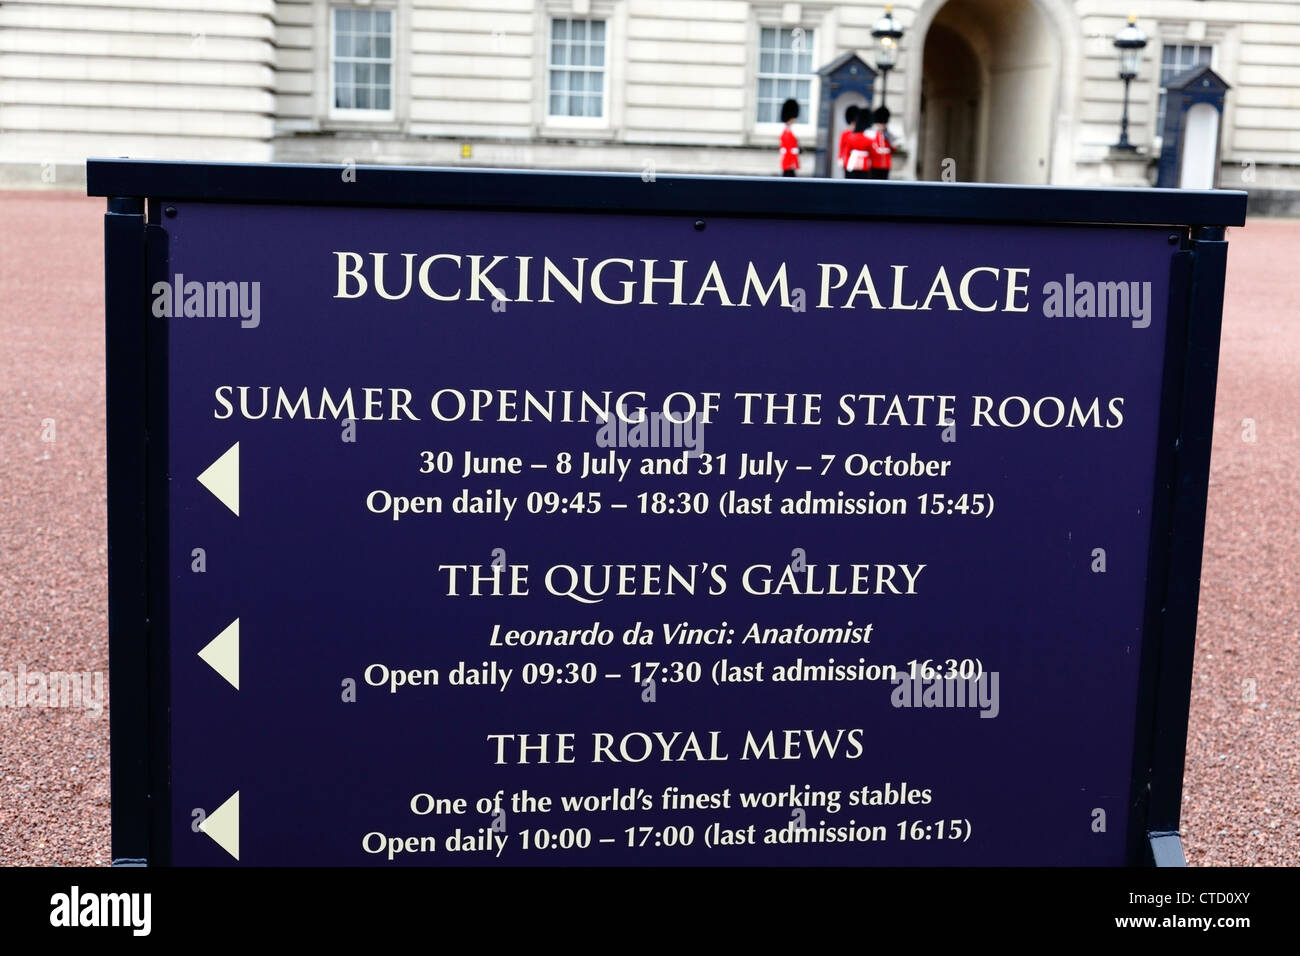 Panneau Buckingham Palace avec horaires d'ouverture en été pour les chambres State, Buckingham Palace, Londres, Royaume-Uni Banque D'Images